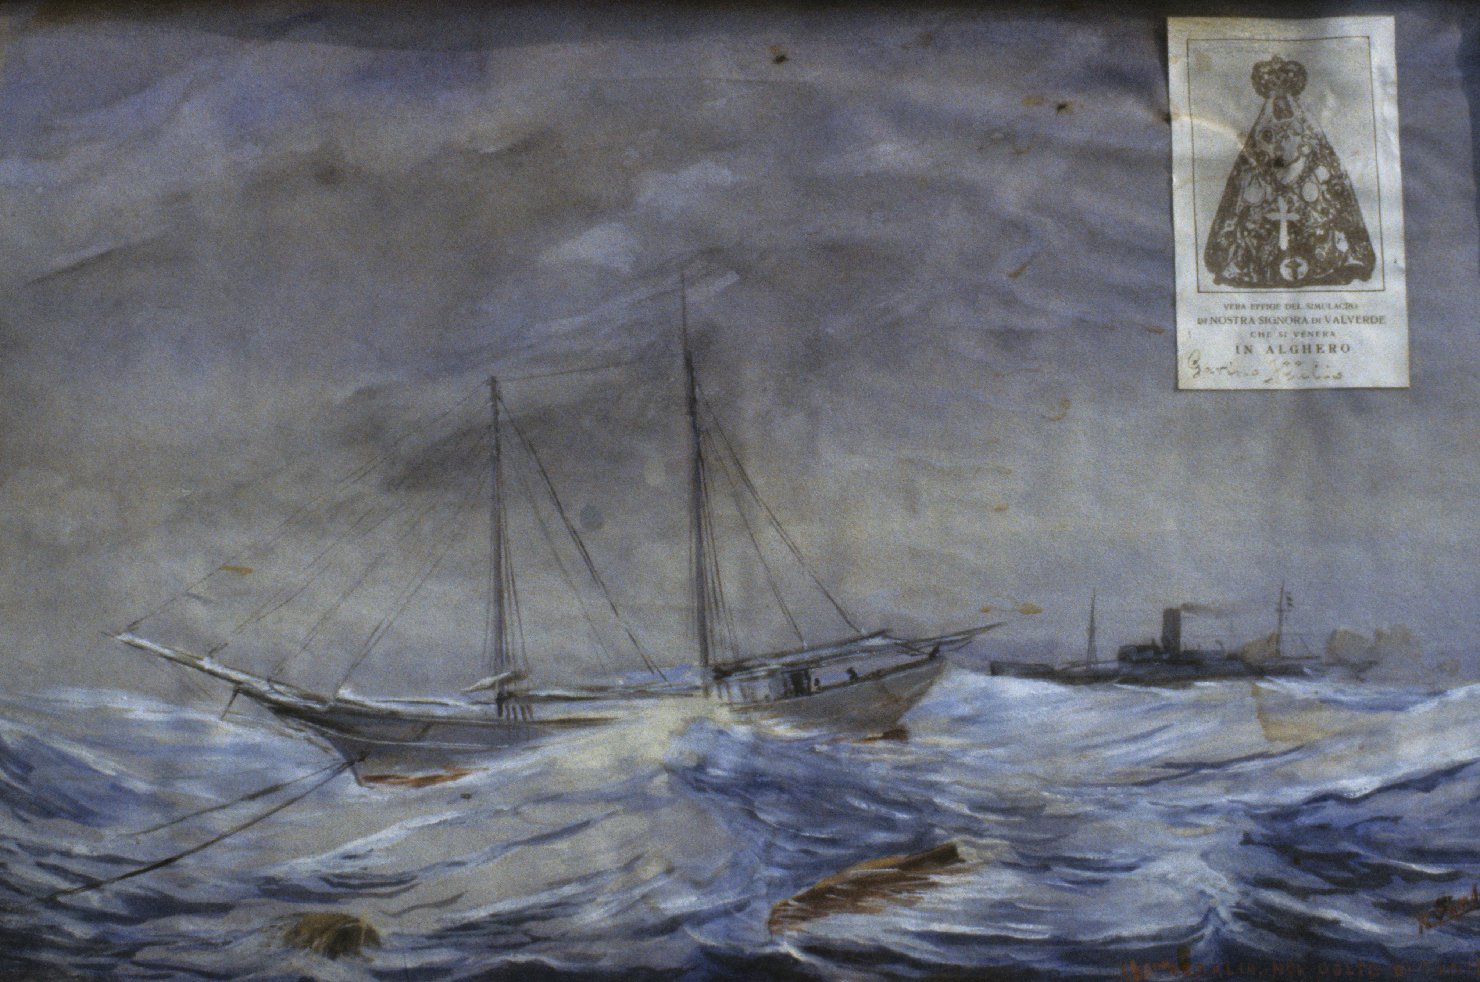 Il veliero "rosalia" nel golfo di tunisi durante il ciclone, intervento salvifico della vergine di valverde in un naufragio (ex voto dipinto)